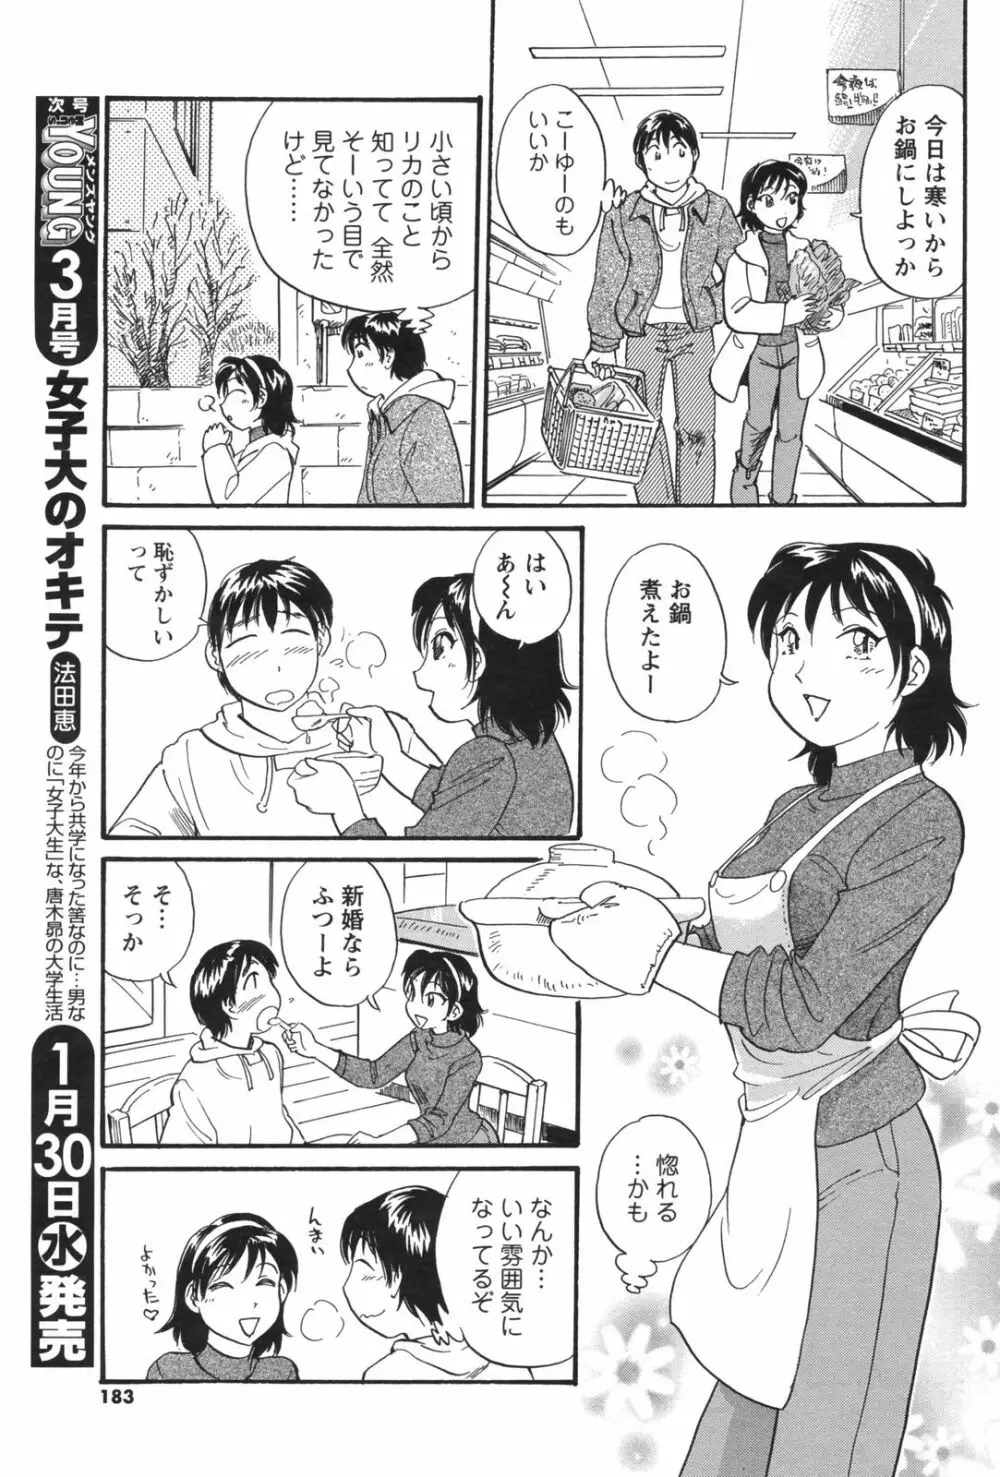 メンズヤングスペシャルIKAZUCHI雷 Vol.5 2008年3月号増刊 183ページ